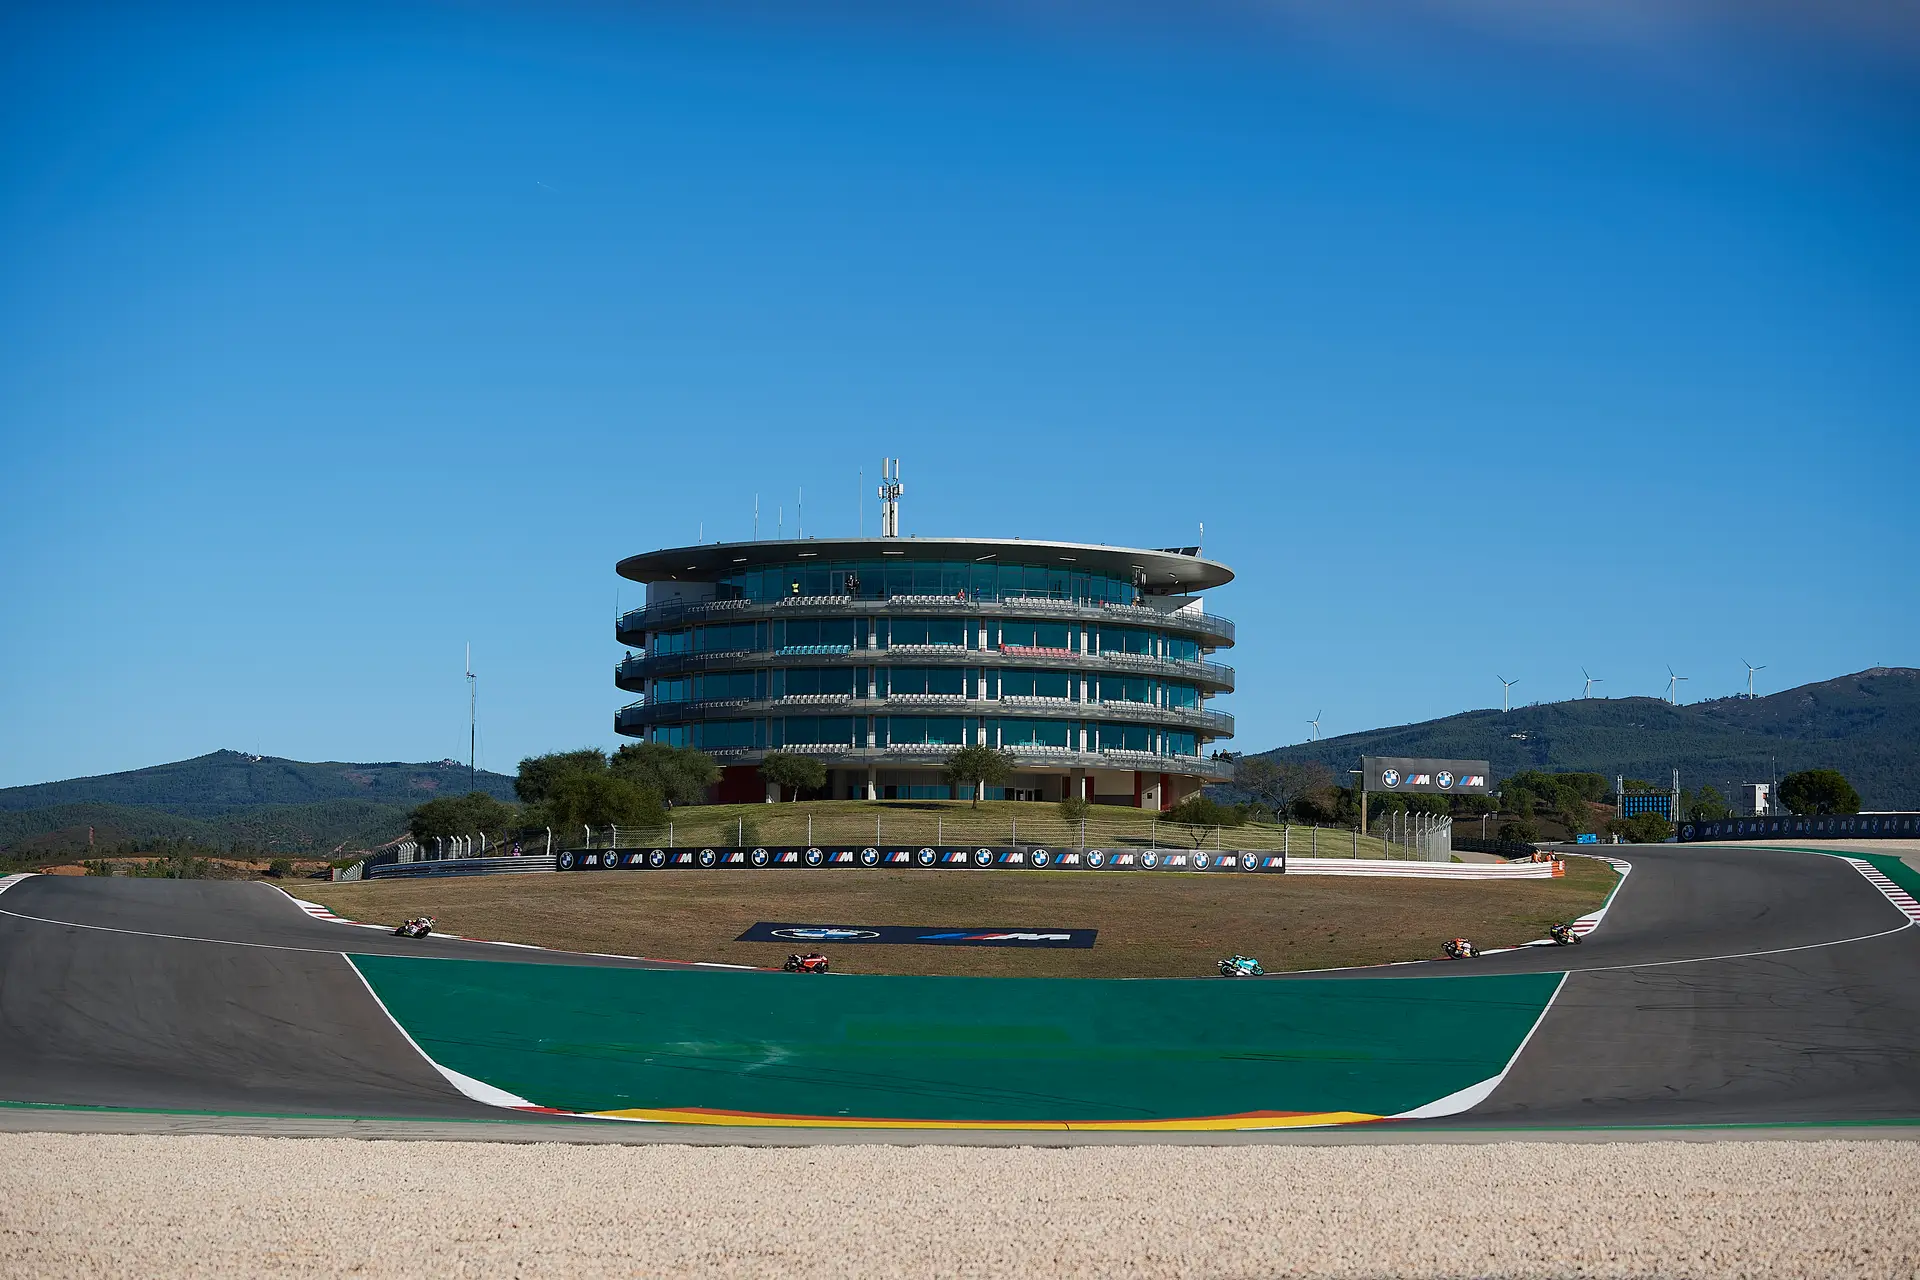 Autódromo do Algarve está no calendário provisório de provas do